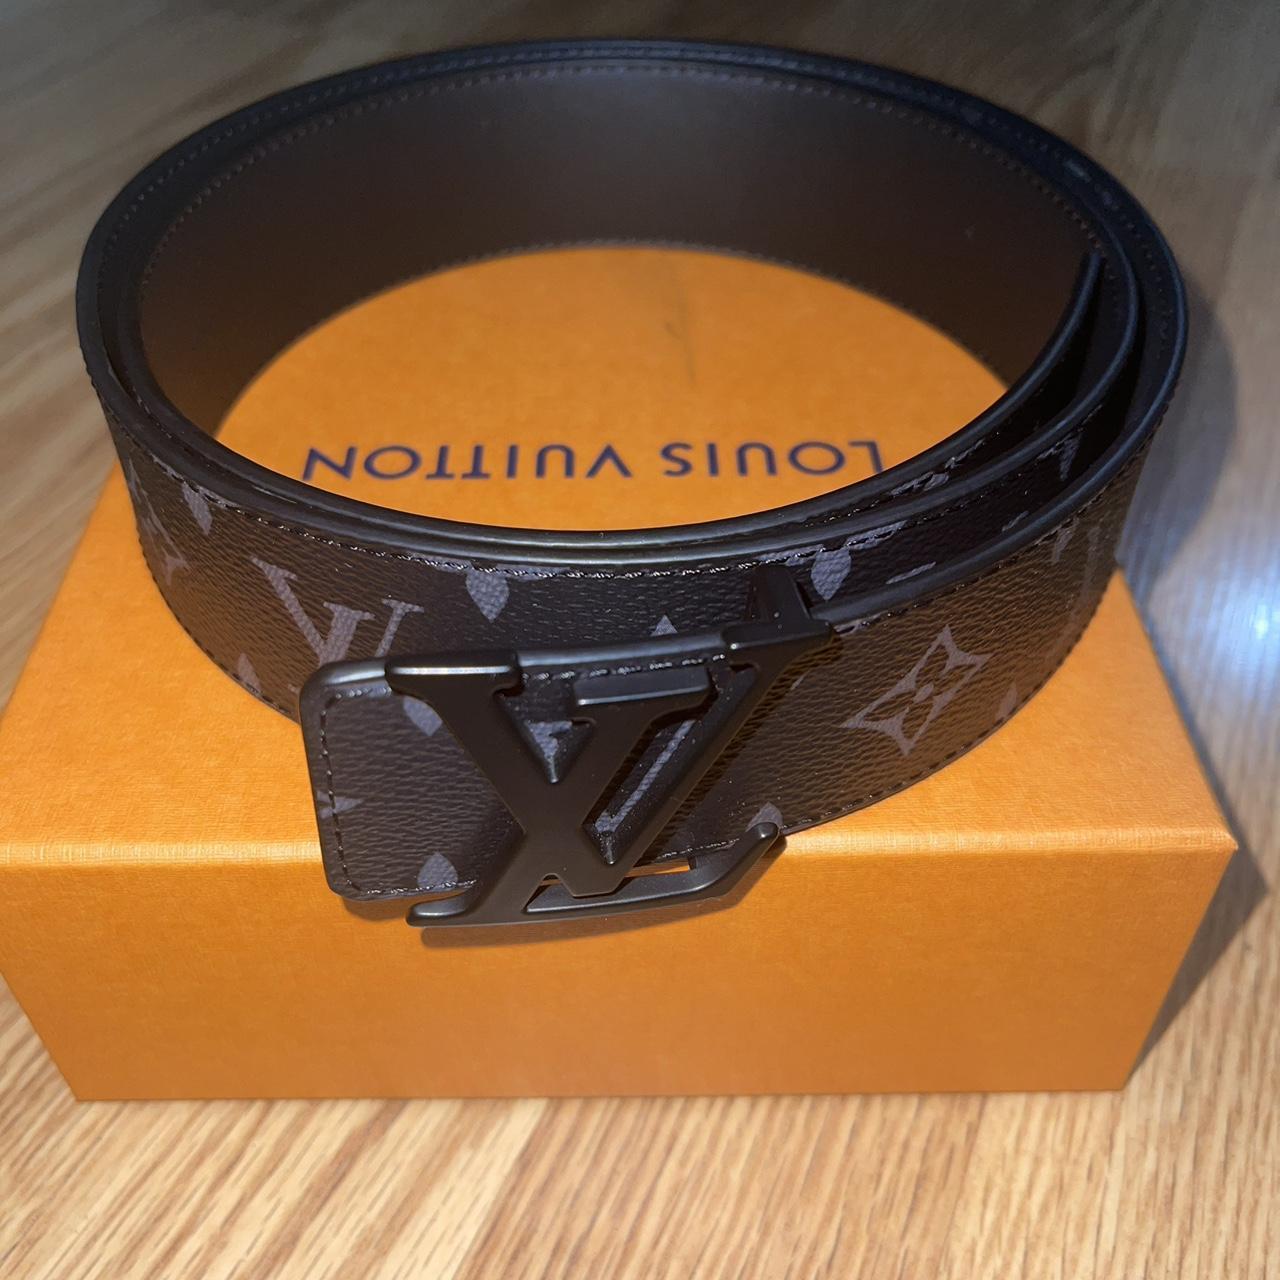 Louis Vuitton 40MM Belt, Matte black / grey, Worn